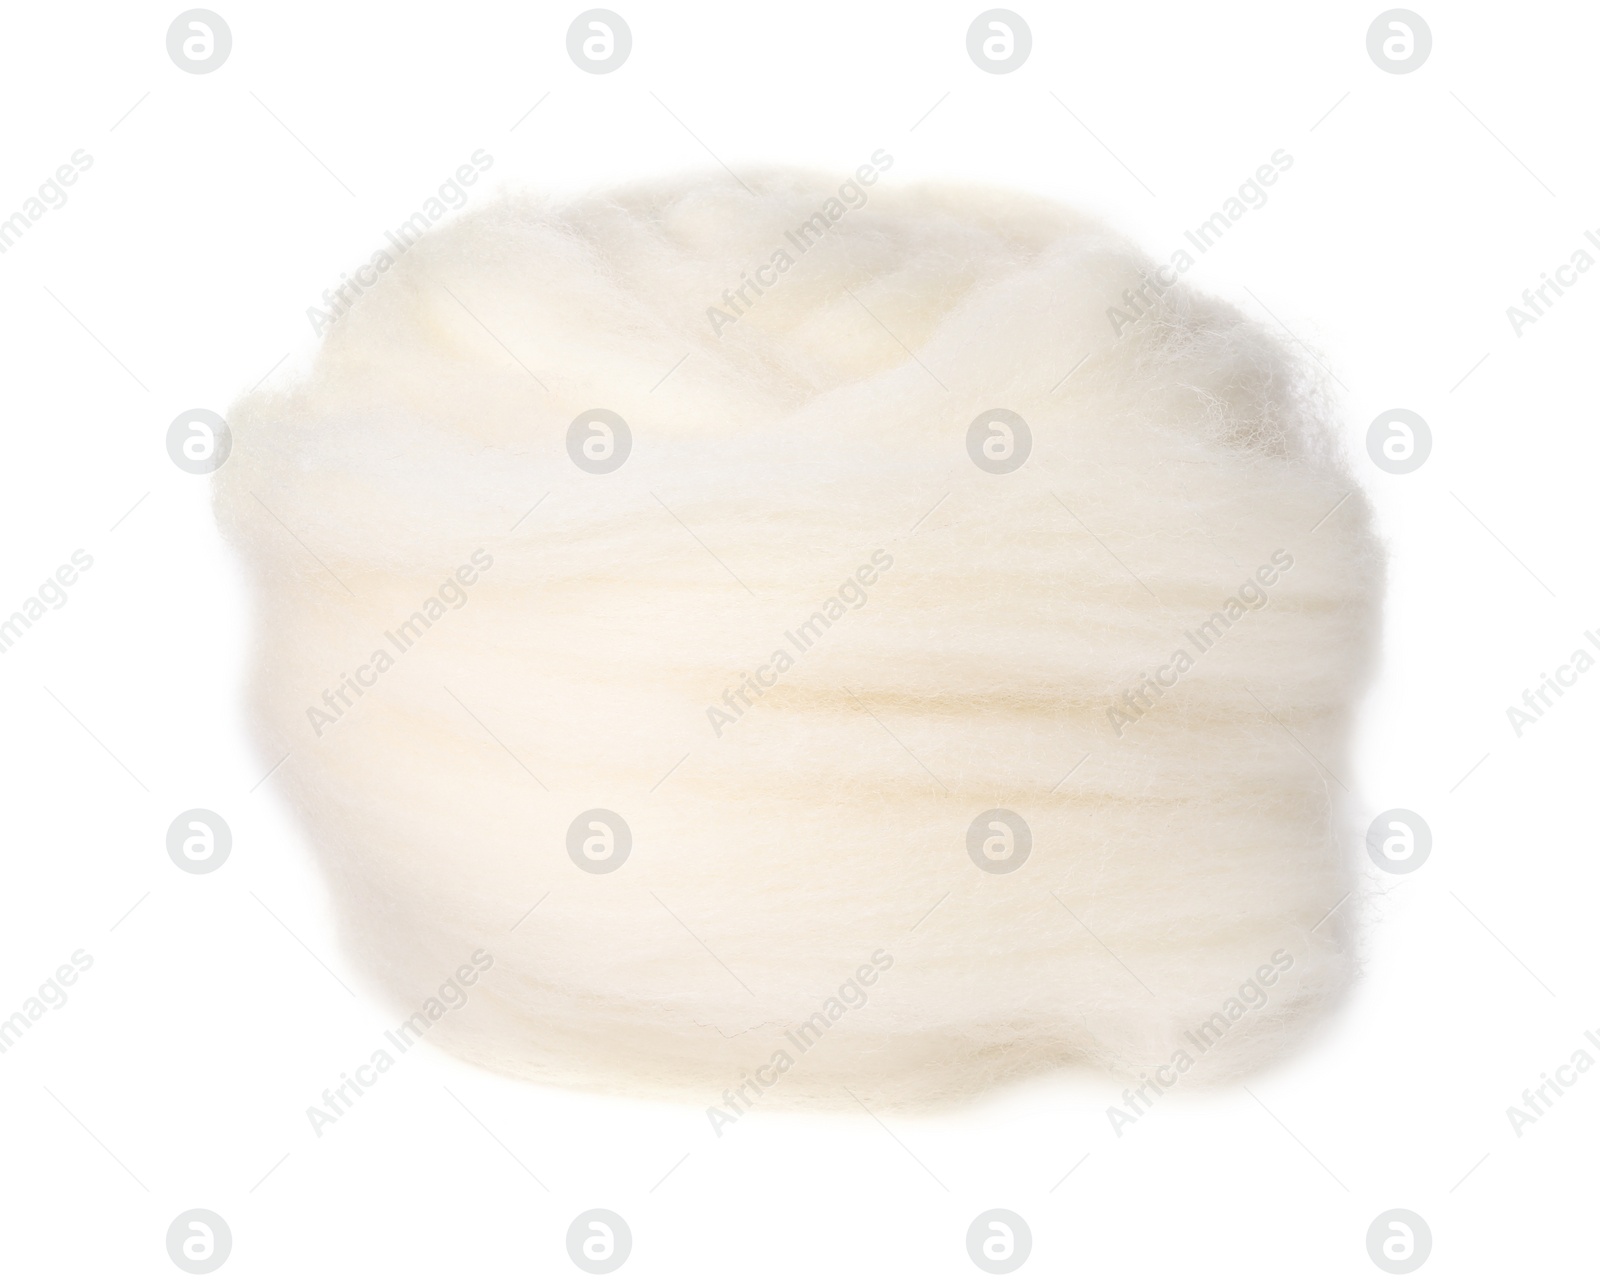 Photo of One soft felting wool isolated on white